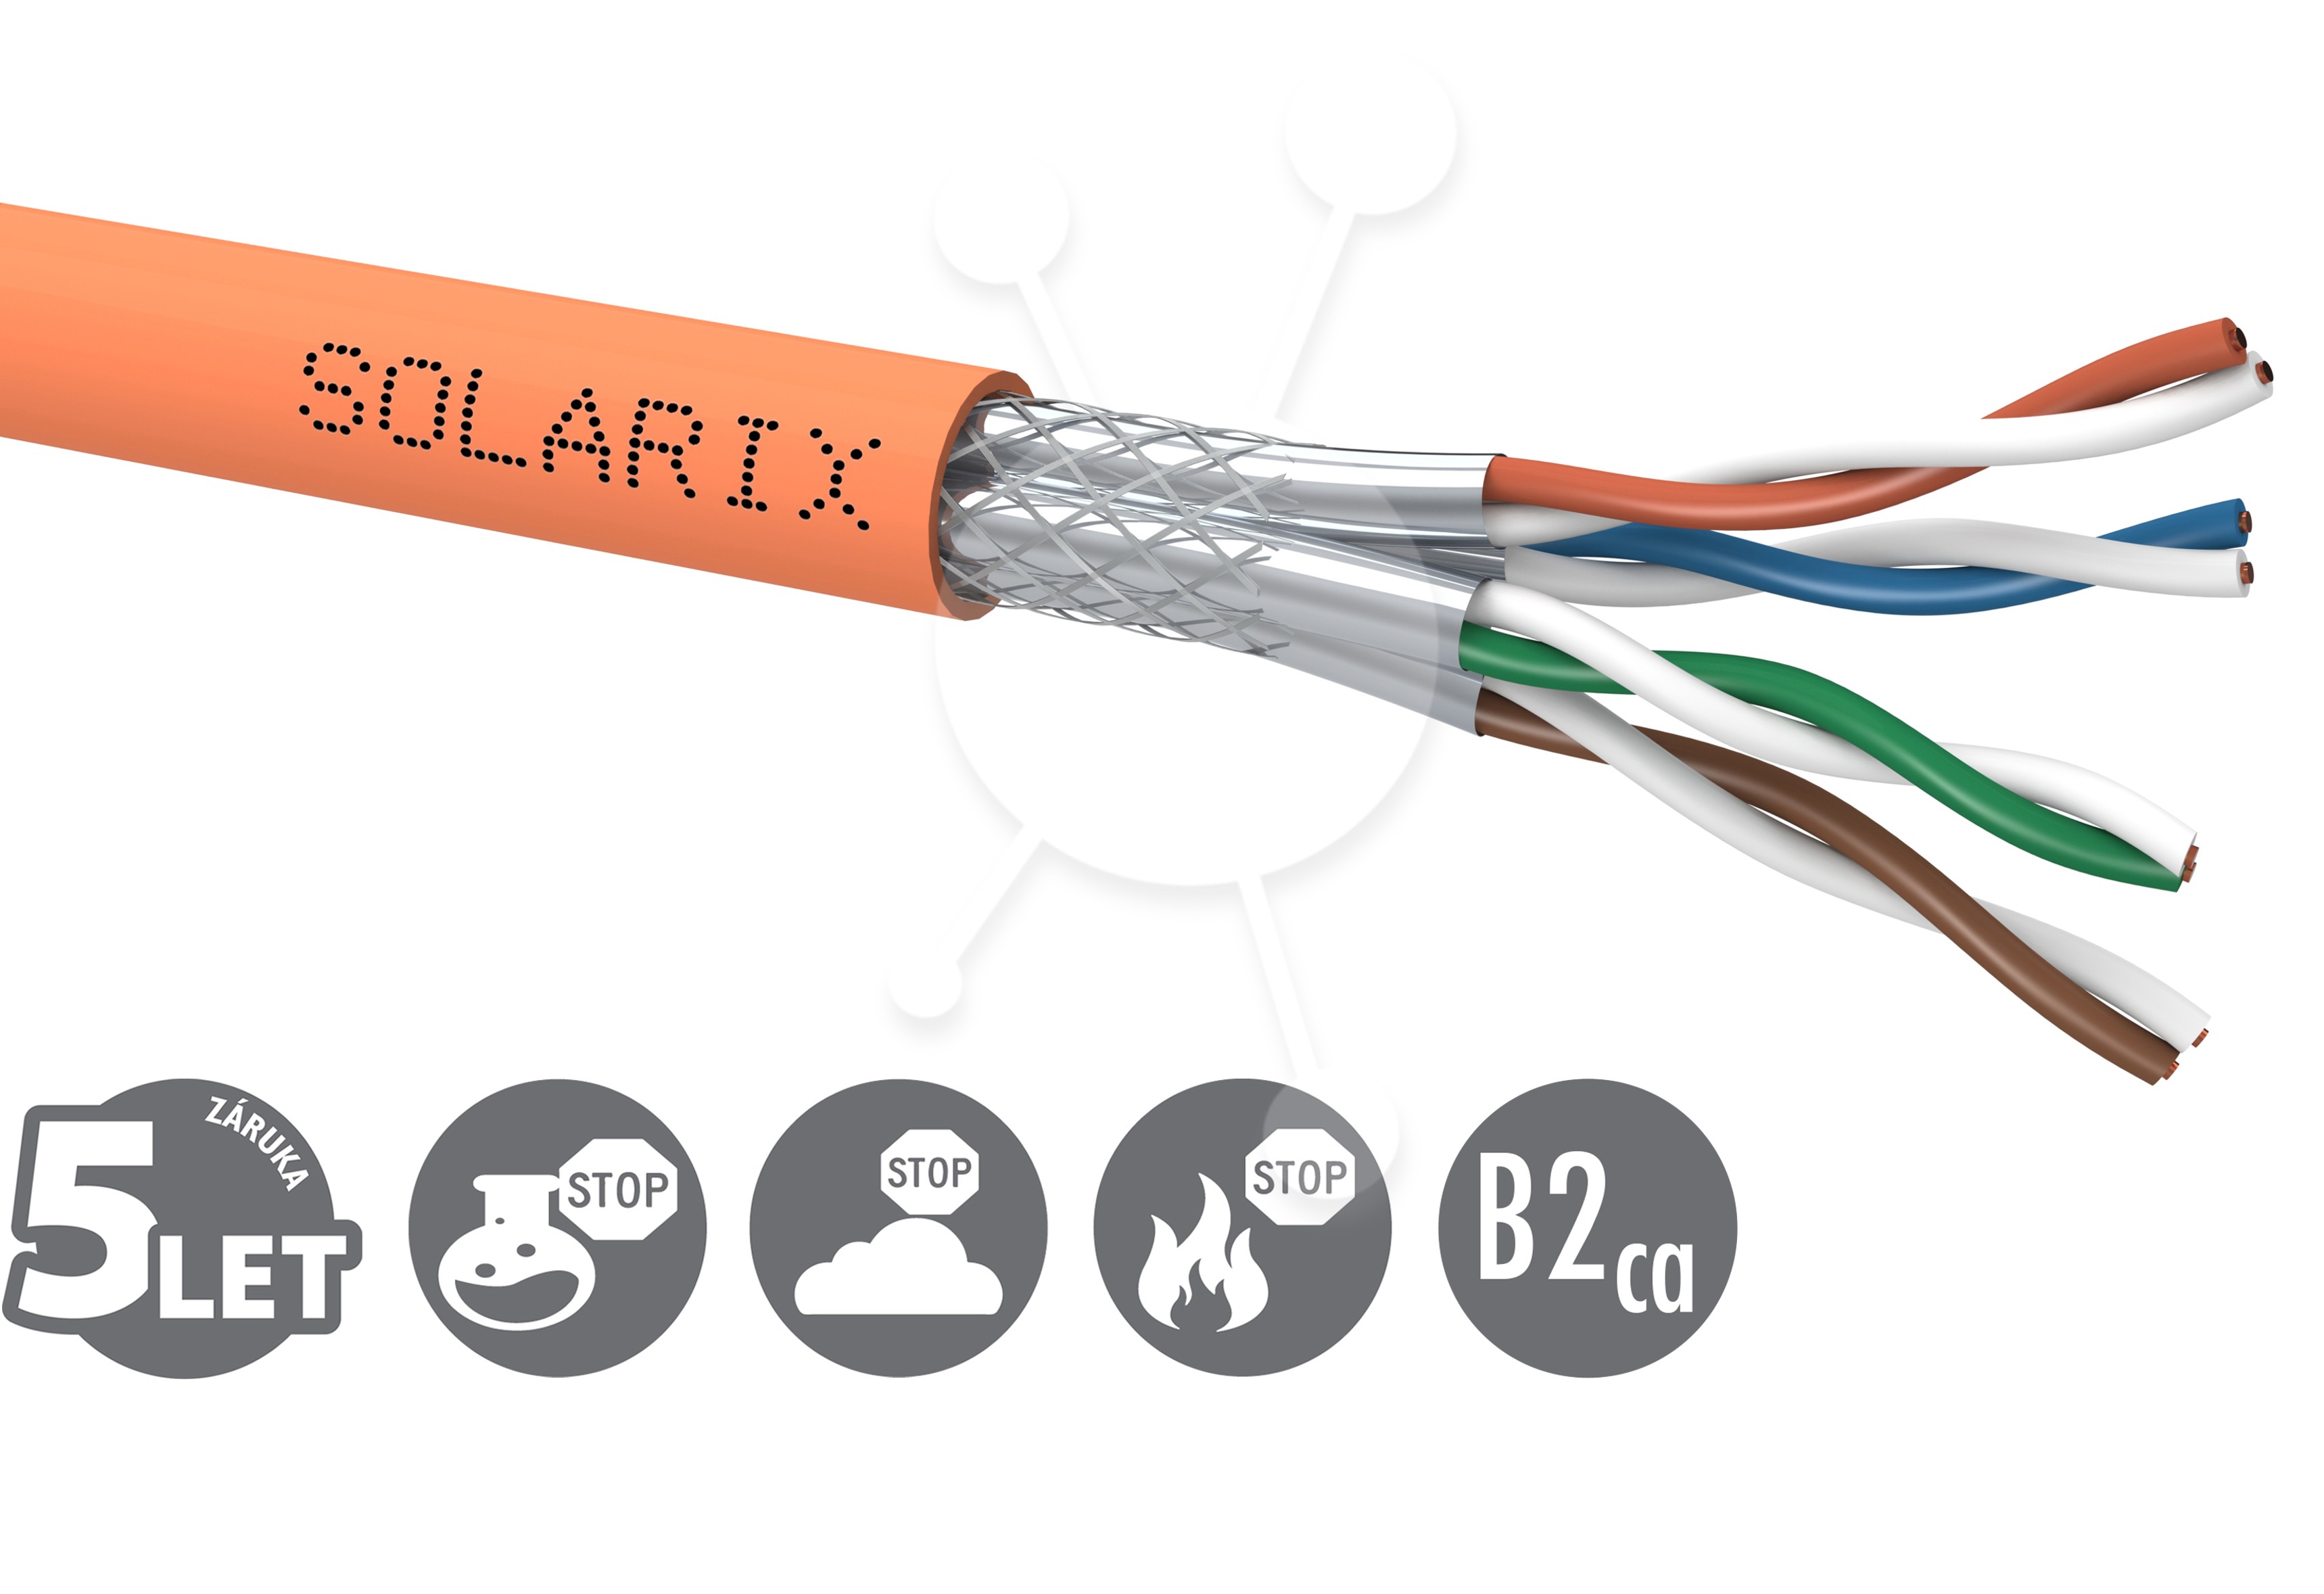 Instalační kabel Solarix CAT7A SSTP LSOHFR B2ca-s1,d1,a1 500m/cívka SXKD-7A-1200-SSTP-LSOHFR-B2ca